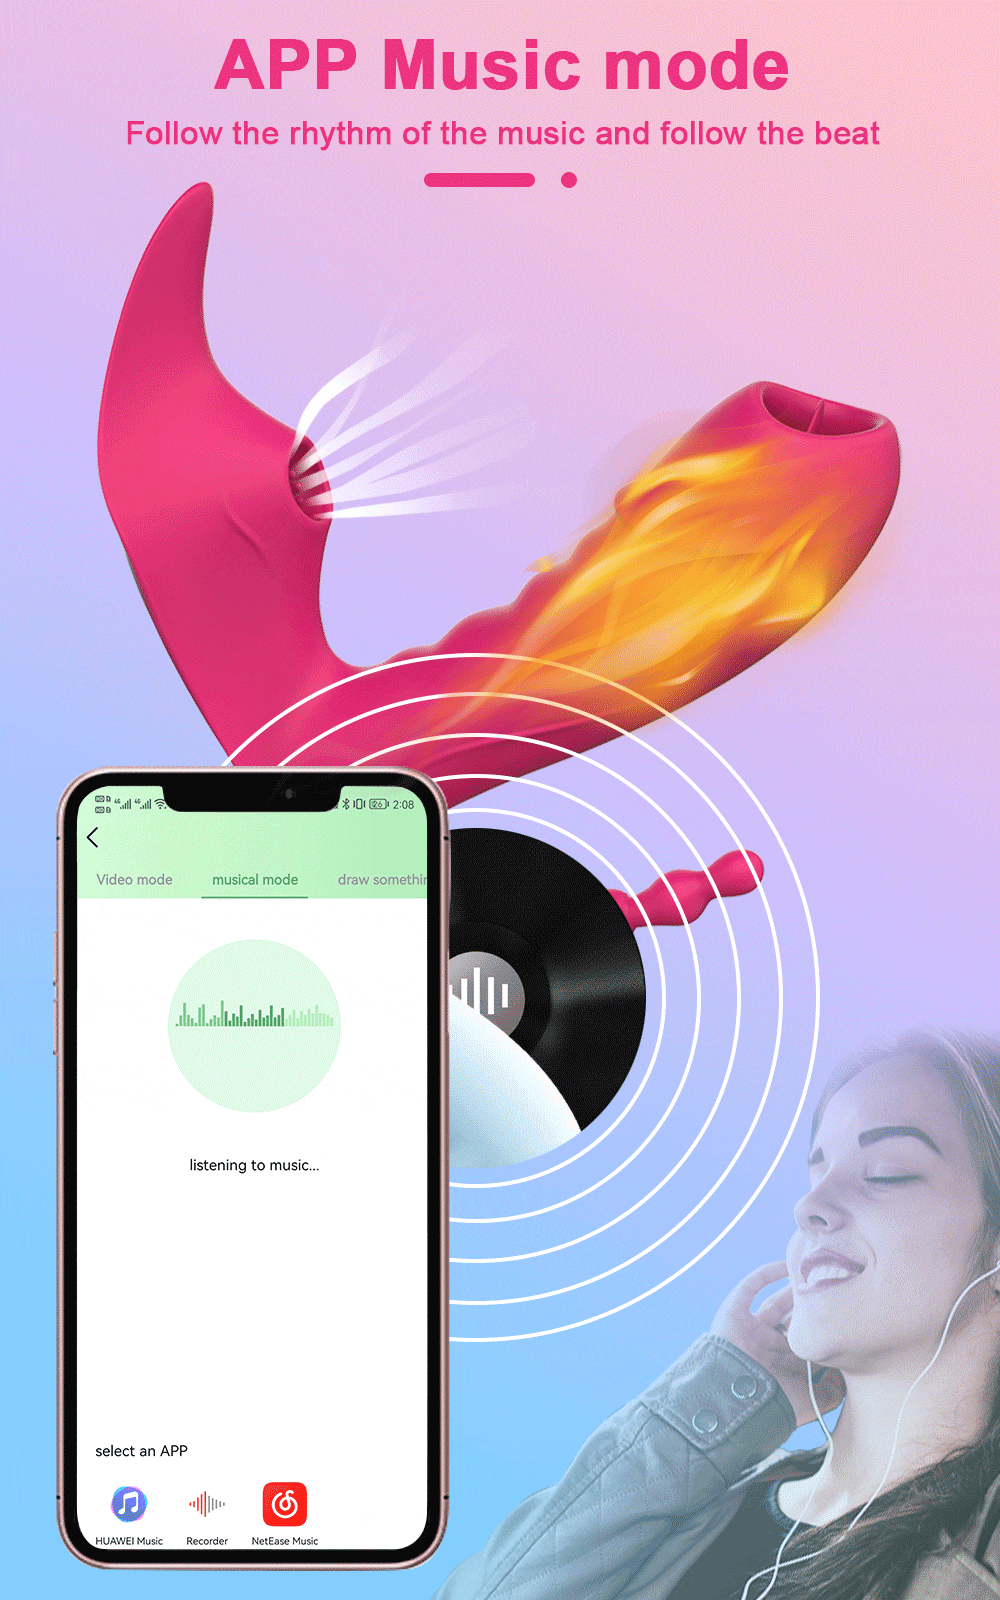  Bán Dương vật giả 3 trong 1 Love Spouse rung liếm hút kết nối Bluetooth điều khiển qua app hàng mới về